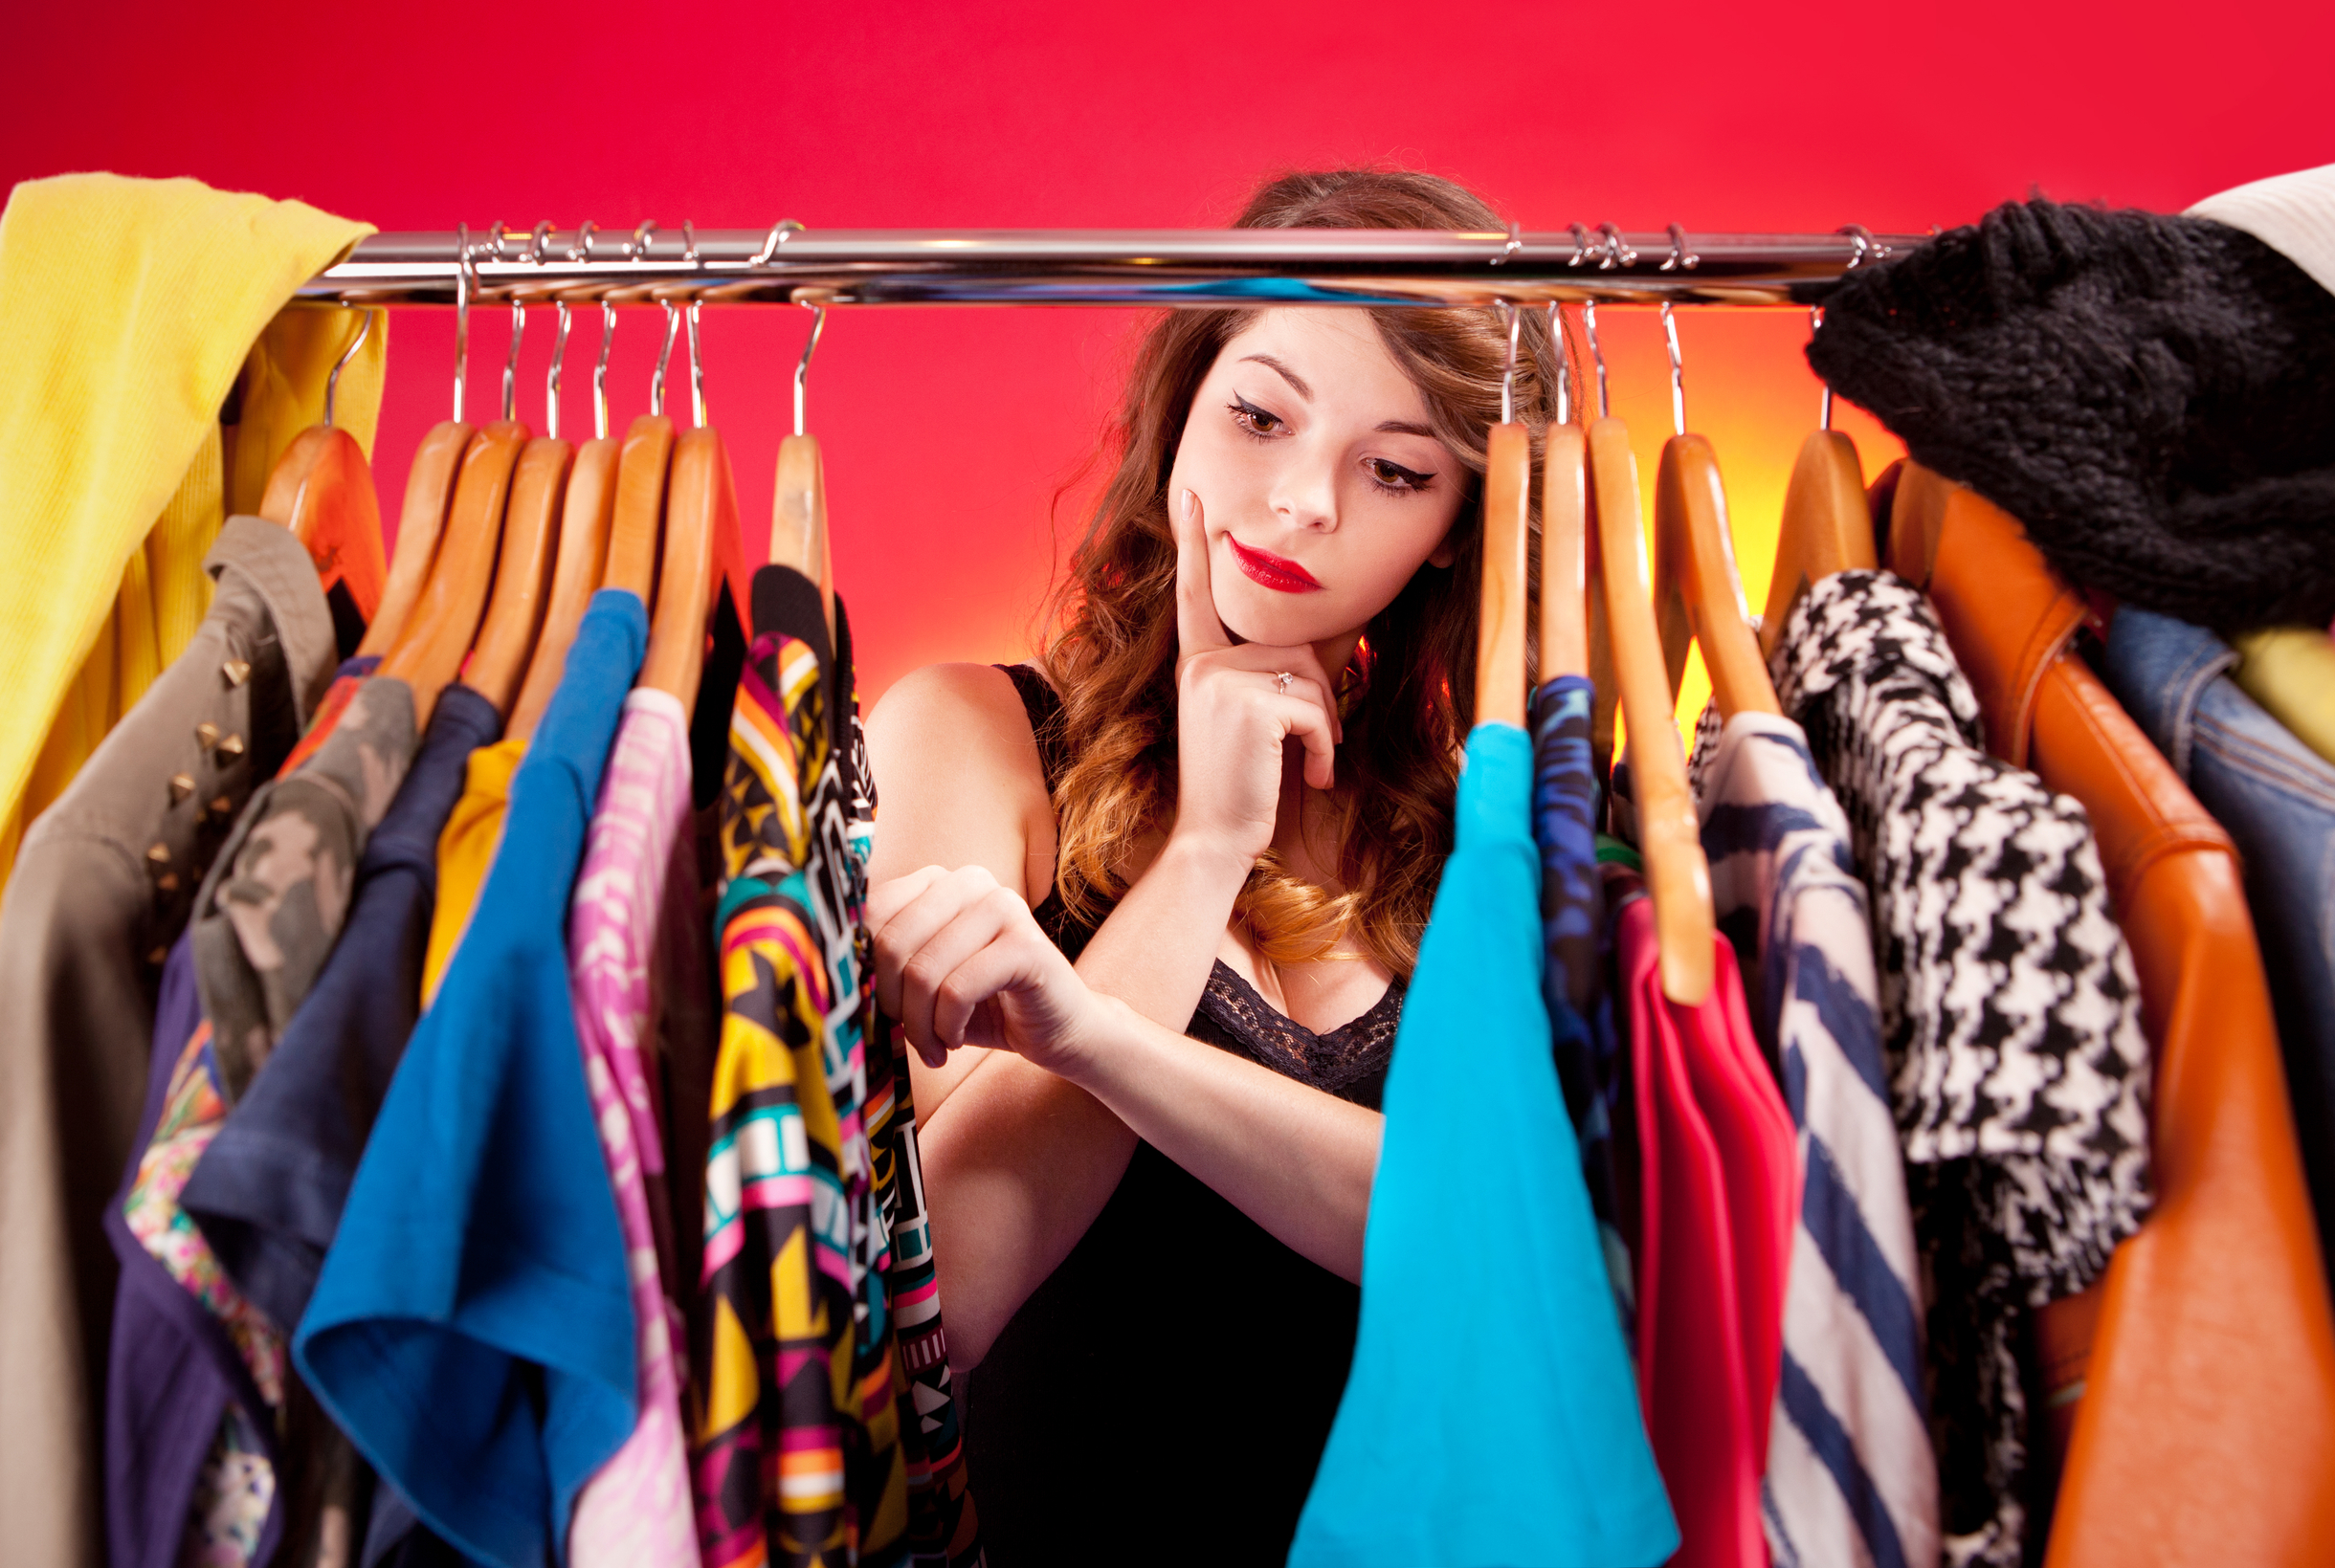 Правила выбора одежды для различных мероприятий: советы и рекомендации стилистов